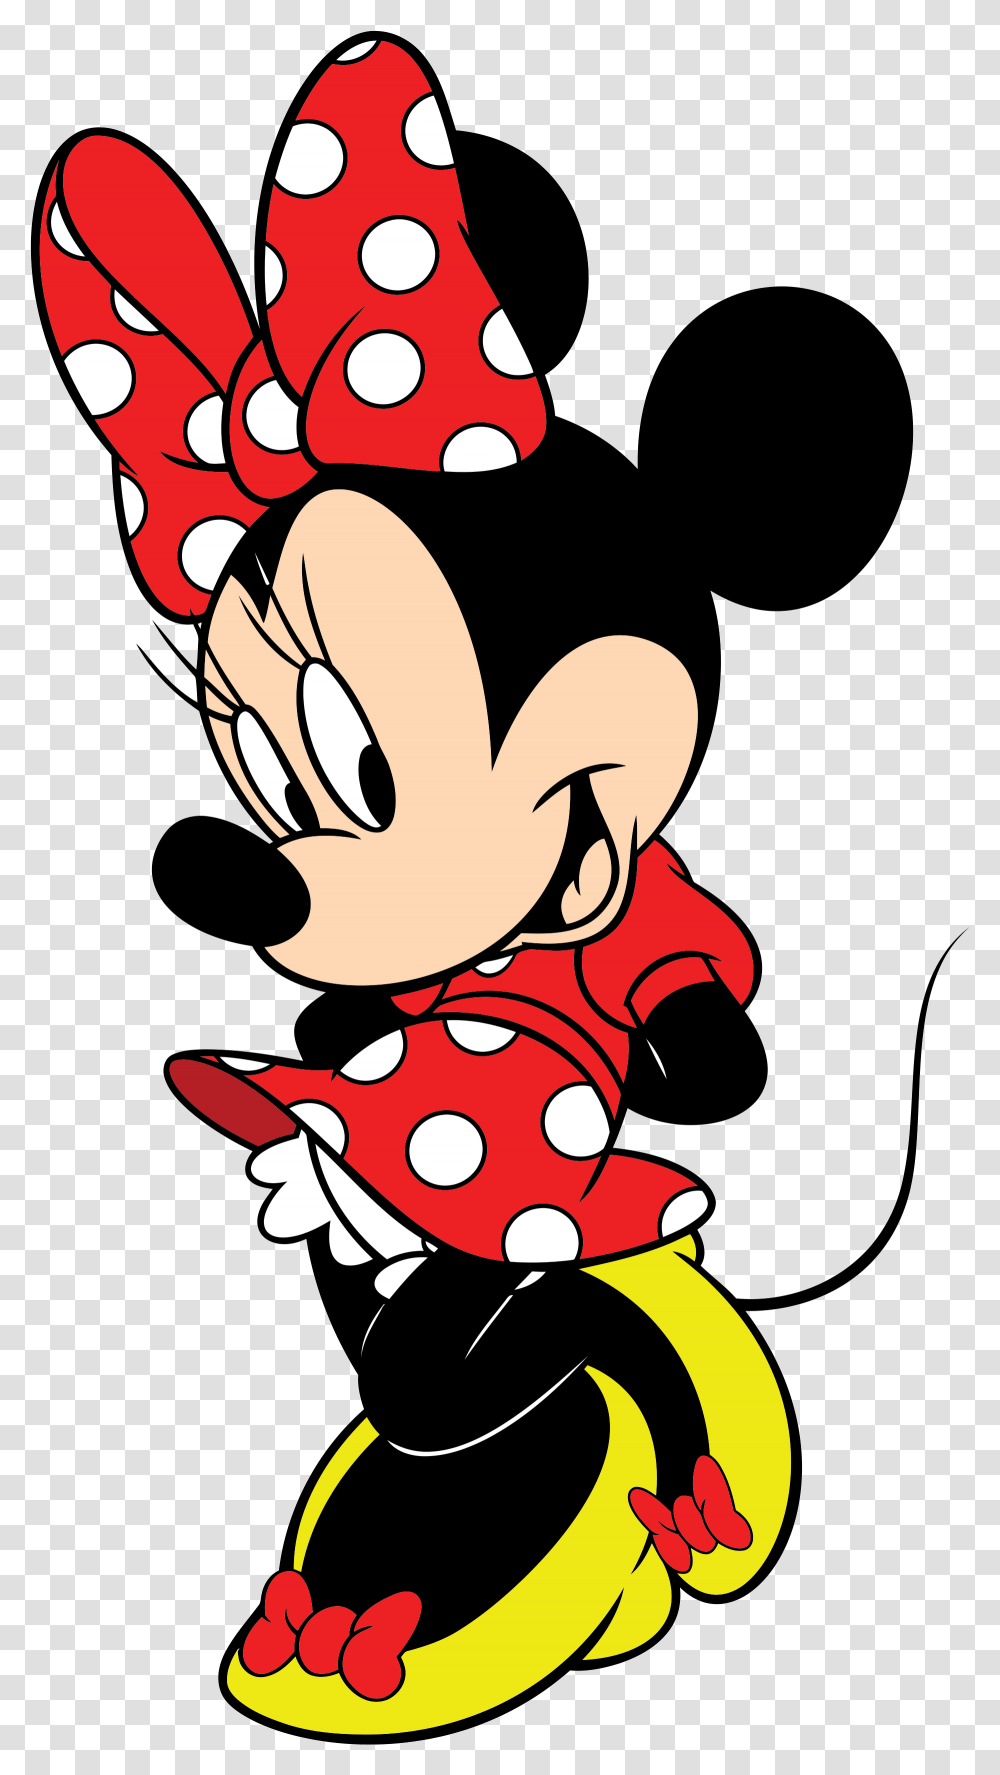 Disney Minnie Mouse Clip Art De Minnie Et Mickey, Floral Design, Poster, Advertisement Transparent Png